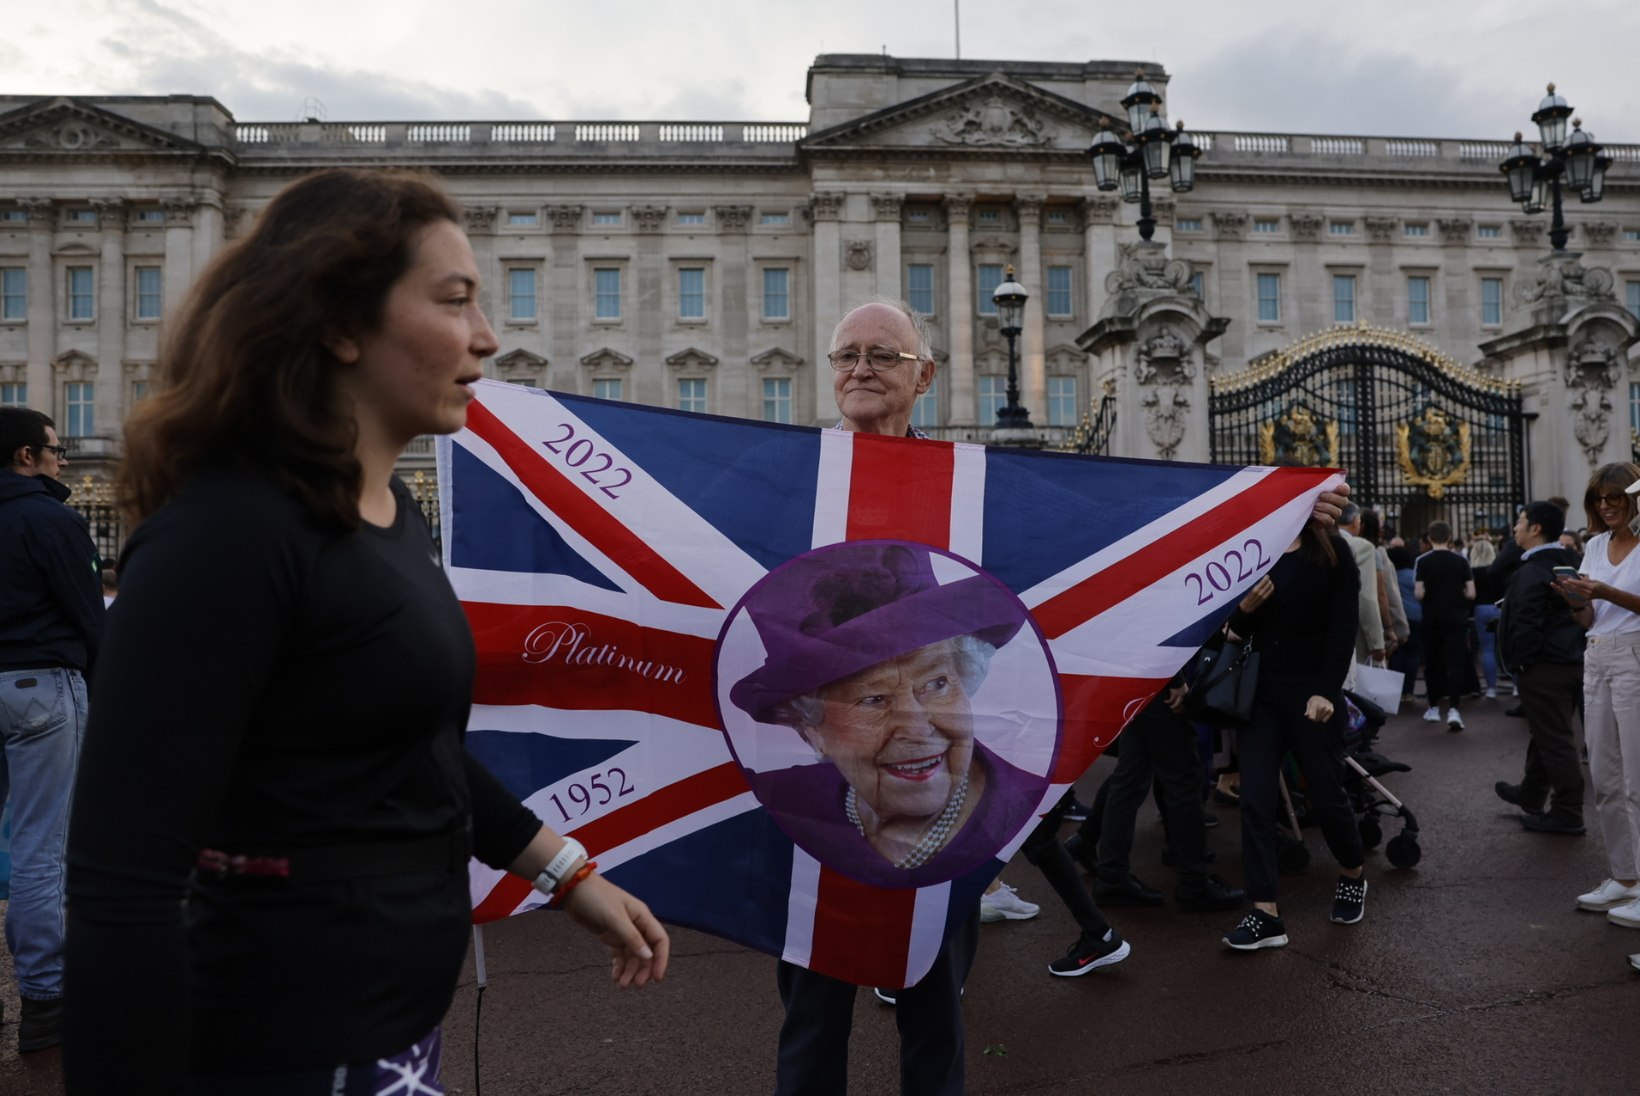 ÕL LONDONIS | REPORTAAŽ | Londonlanna: monarhia oleks võinud Elizabethi surmaga lõppeda, või siis Williamist kuningas saada